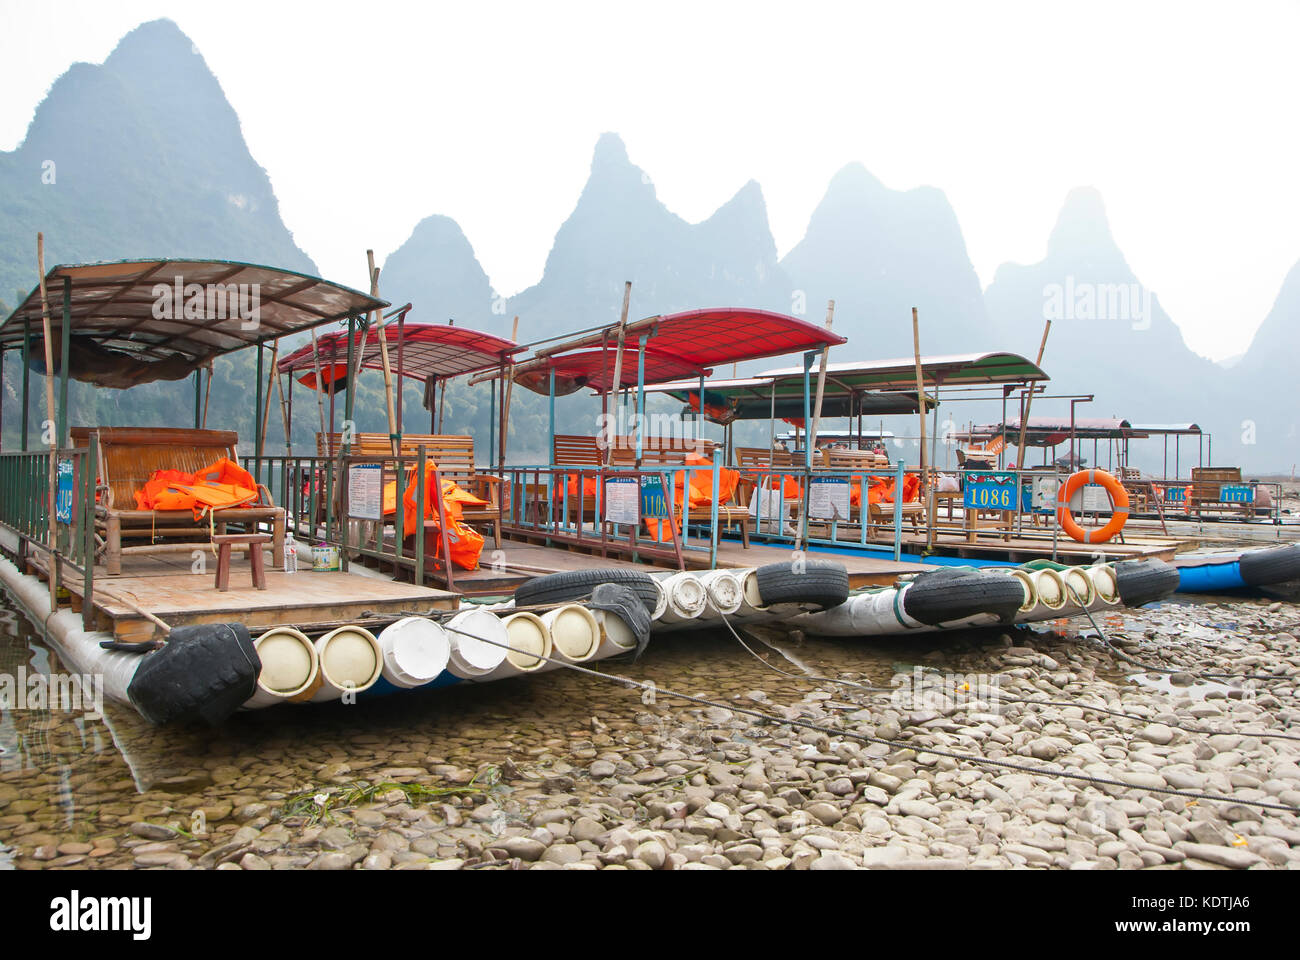 Bamboo Raft in Winter, Li River, Guilin, China  - The Li River or Lijiang is a river in Guangxi Zhuang Autonomous Region, China. Stock Photo